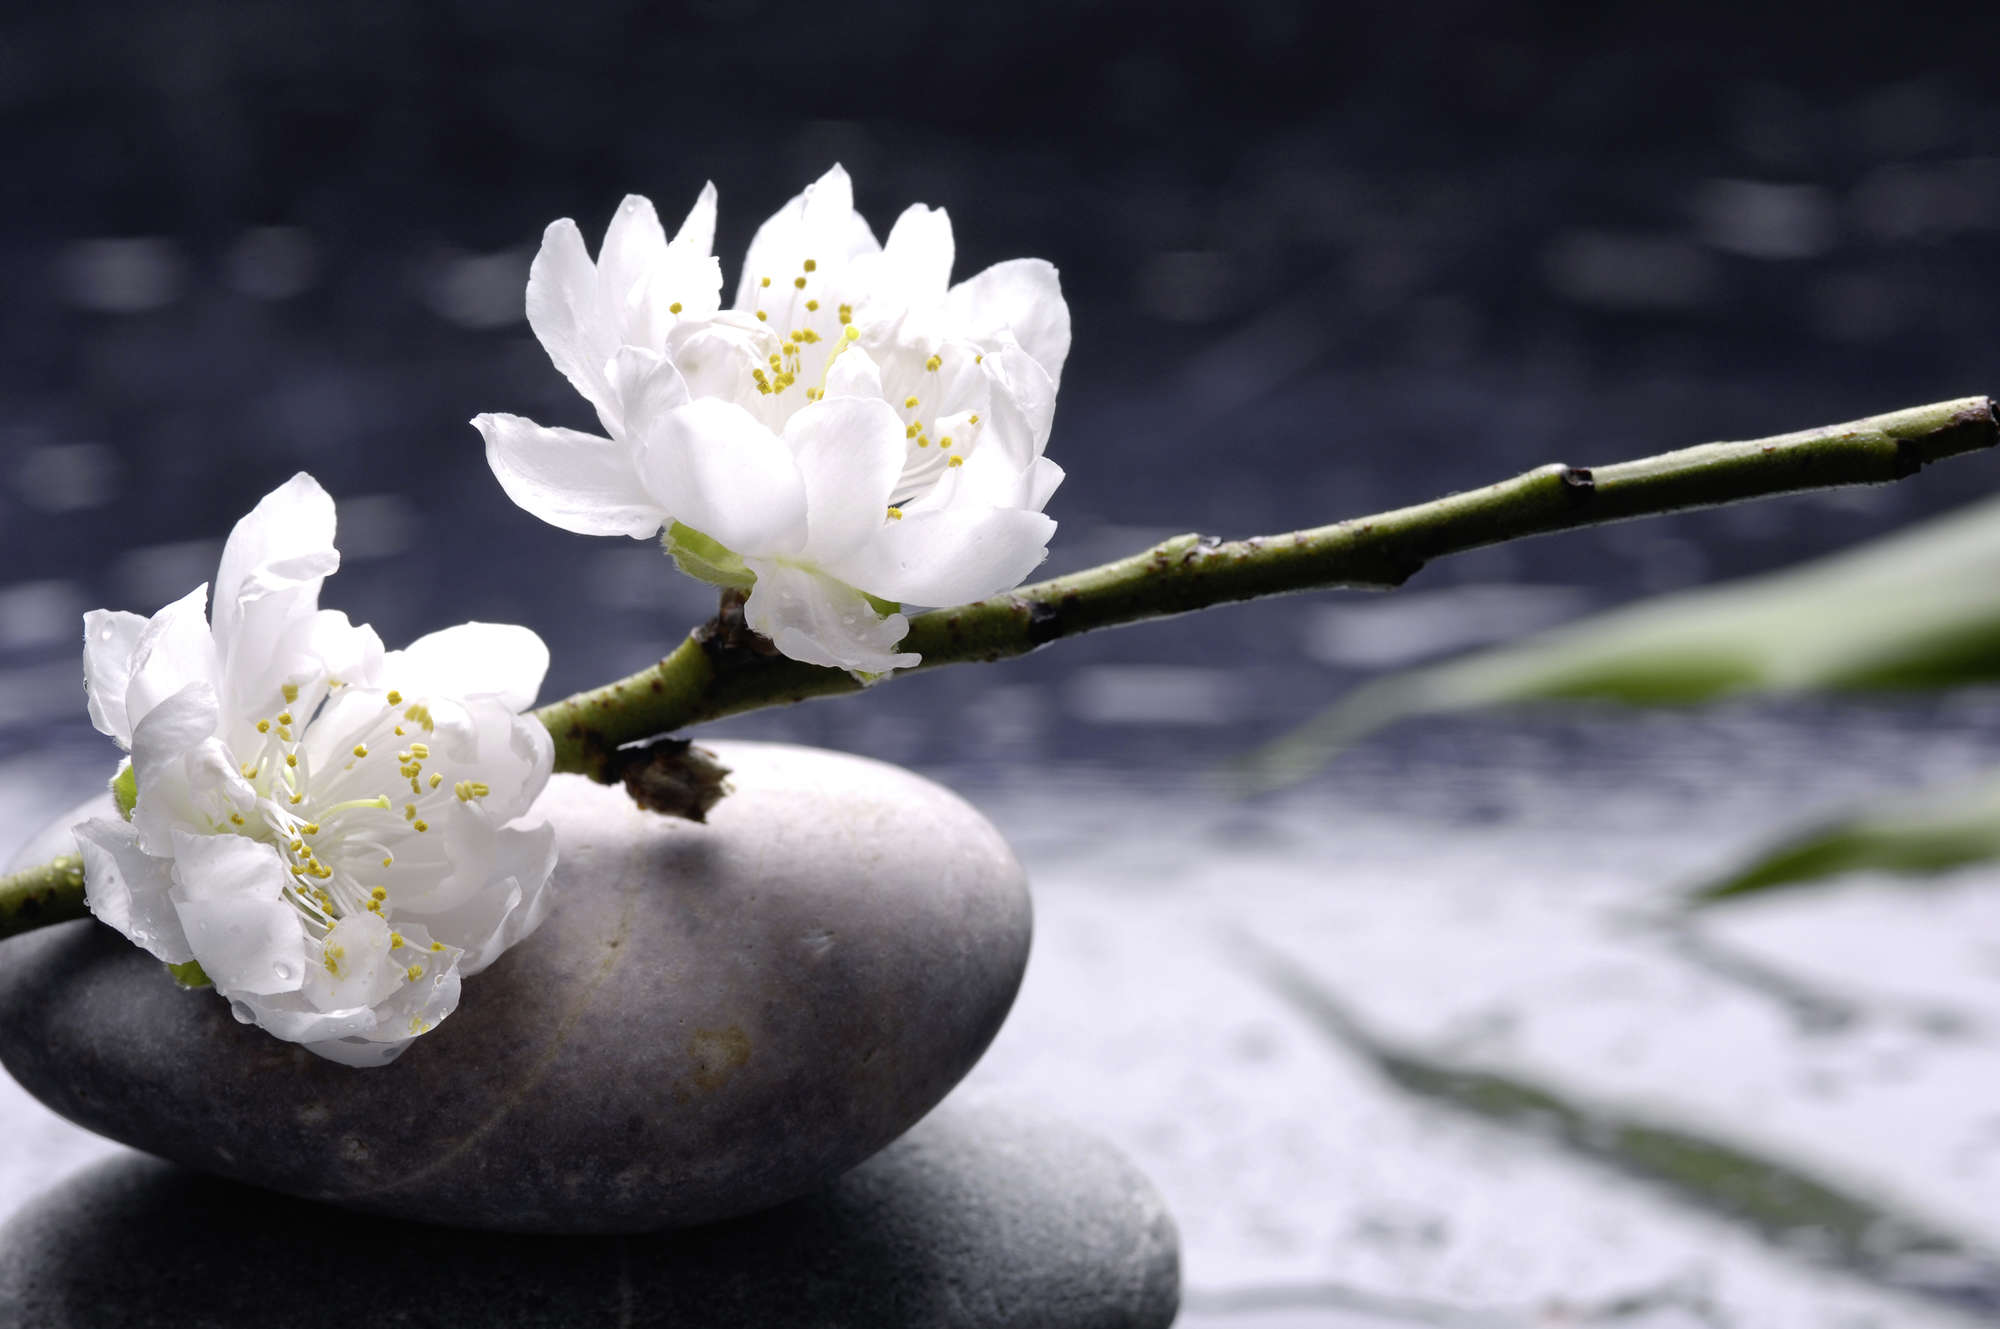             Spa Fototapete weiße Blumen auf Steinen auf Perlmutt Glattvlies
        